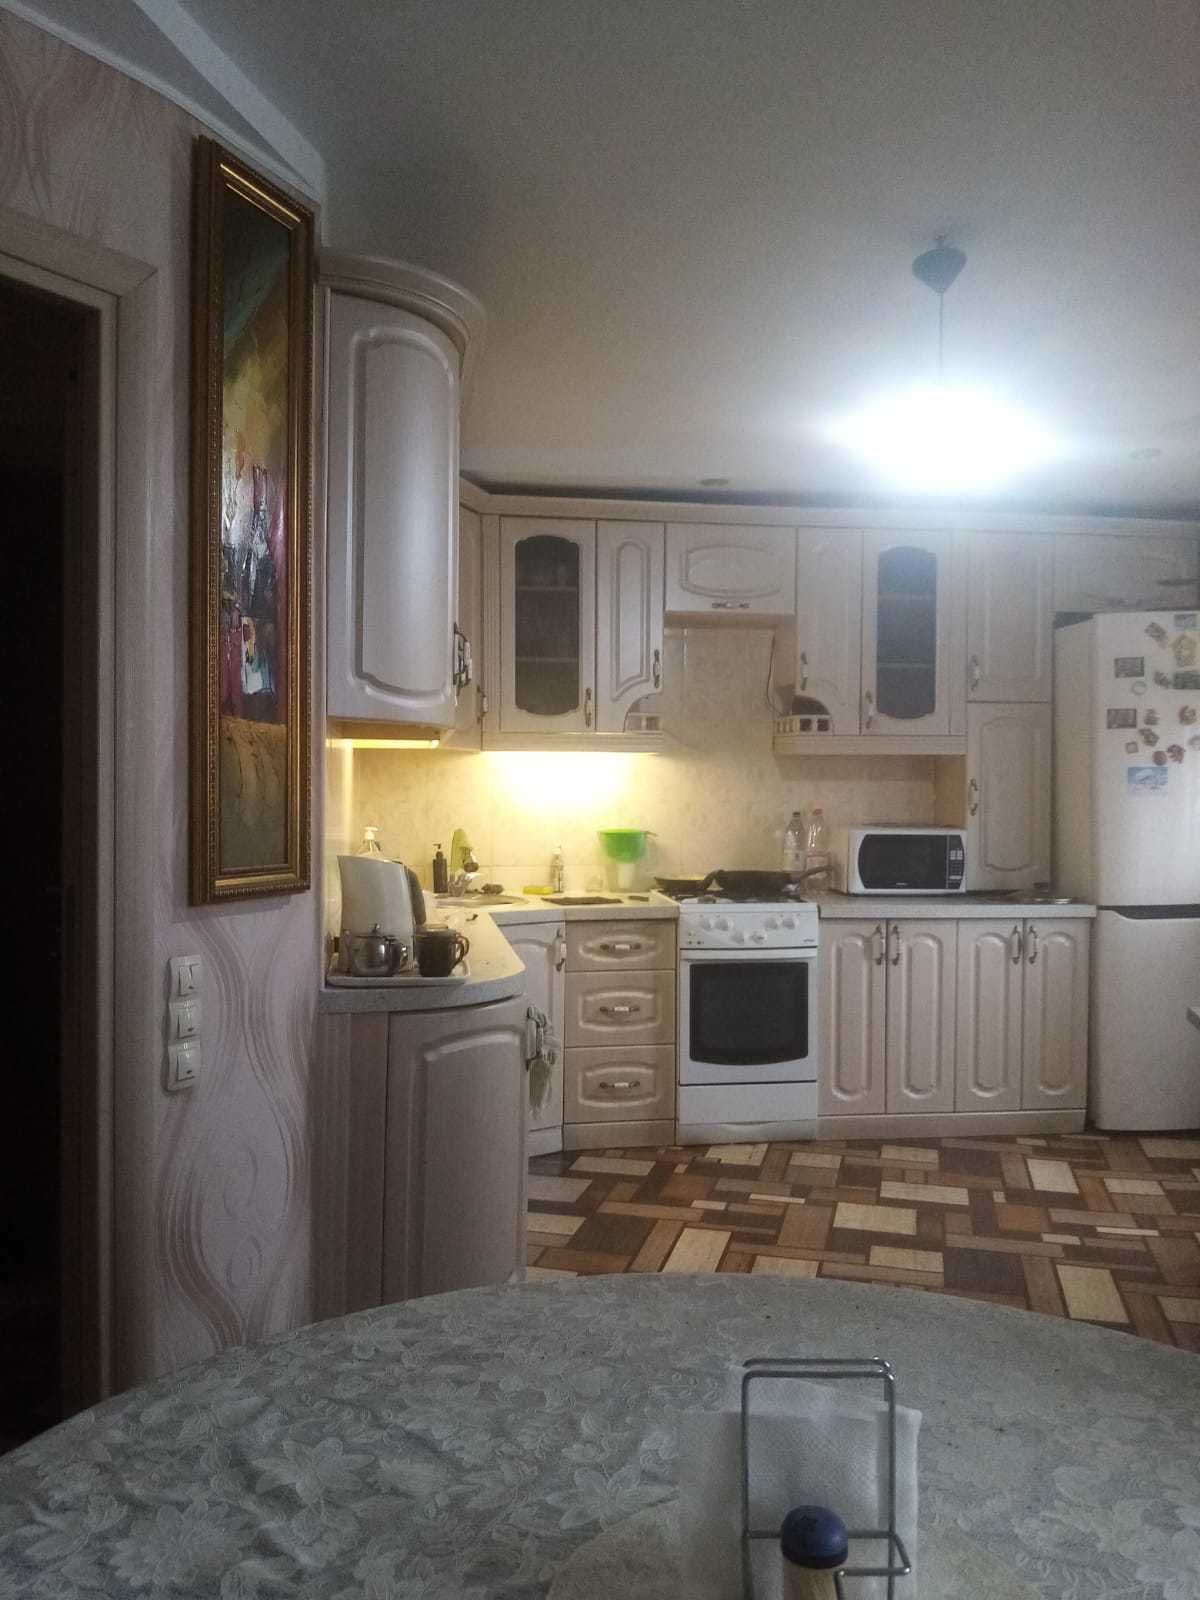 Квартира Зх комнатная 80м2 , кухня 16м2 в 42 доме, район Гагарина.